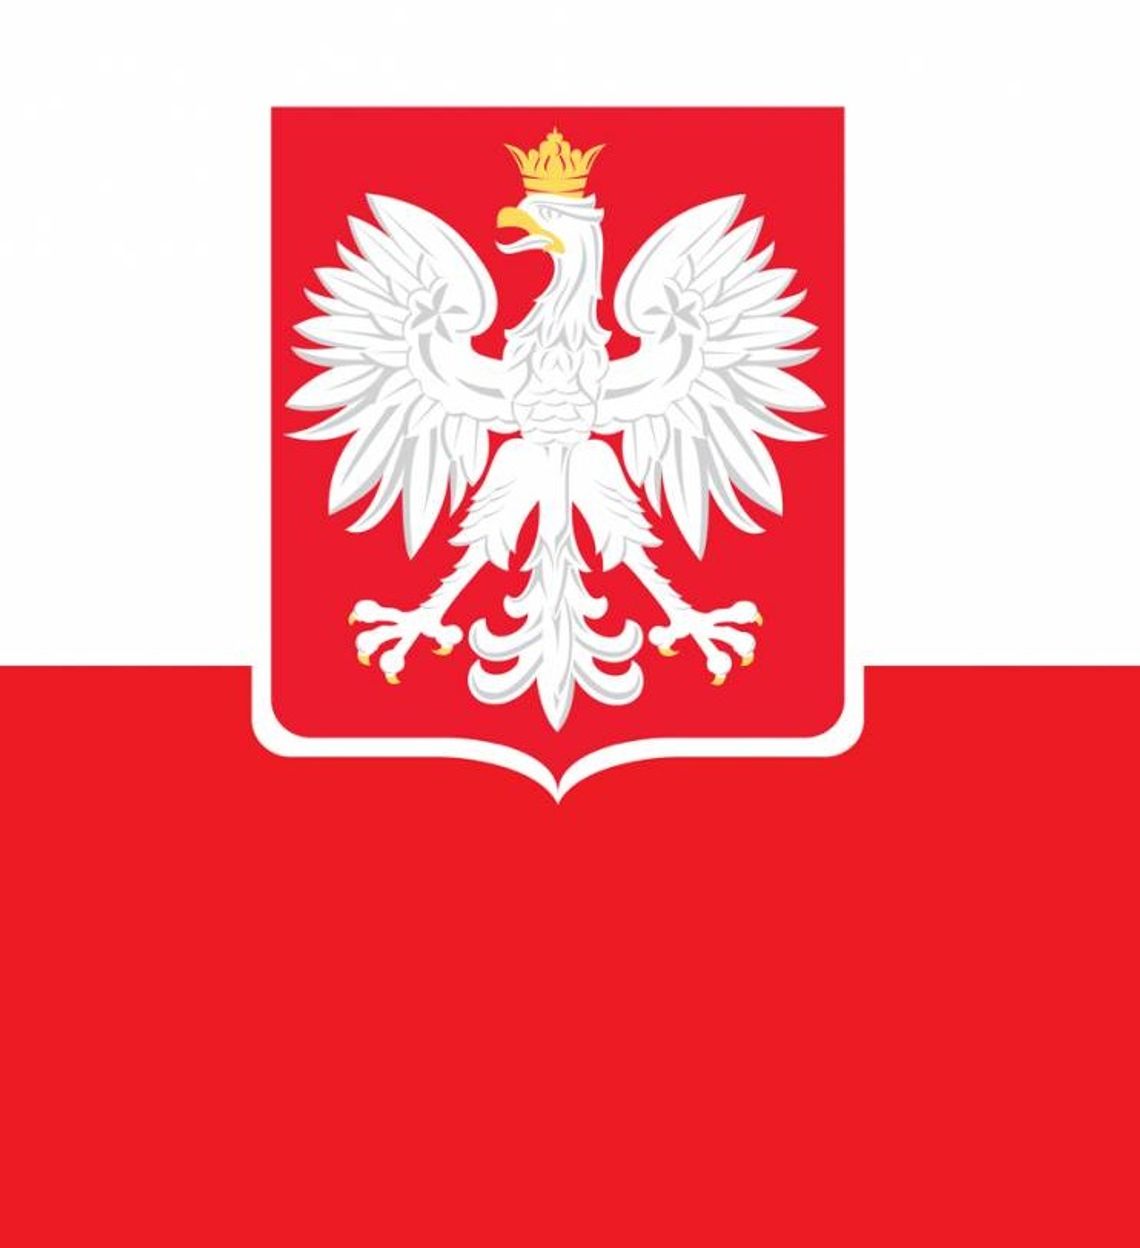 15.10.2023 - Ważny dzień w kalendarzu. Wybory i referendum w Polsce